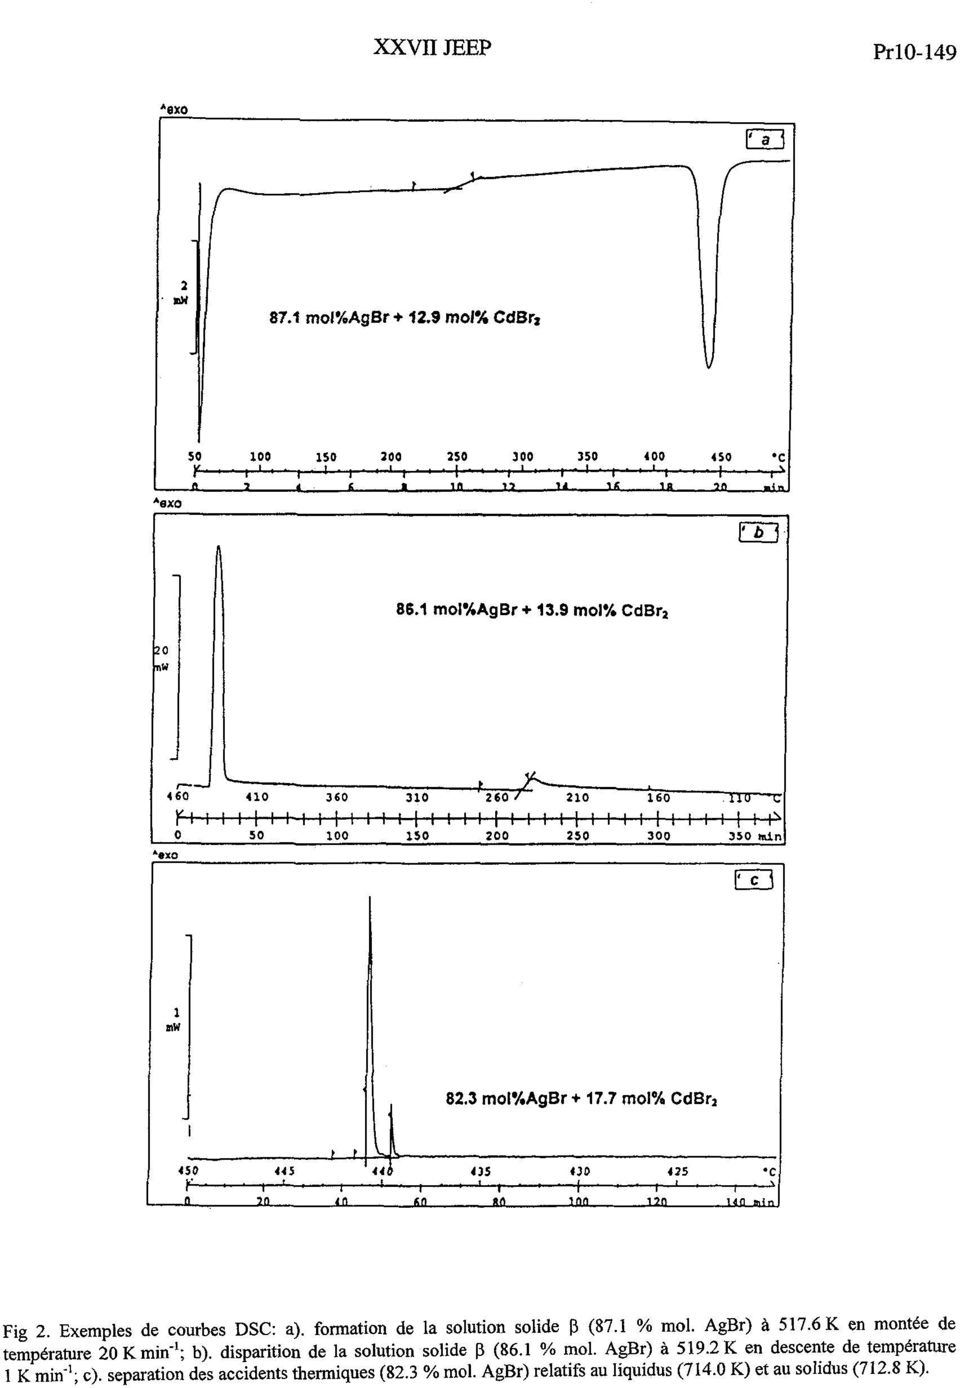 formation de la solution solide P (87.1 % mol. AgBr) à 517.6 K en montée de température 20 K min-'; b).